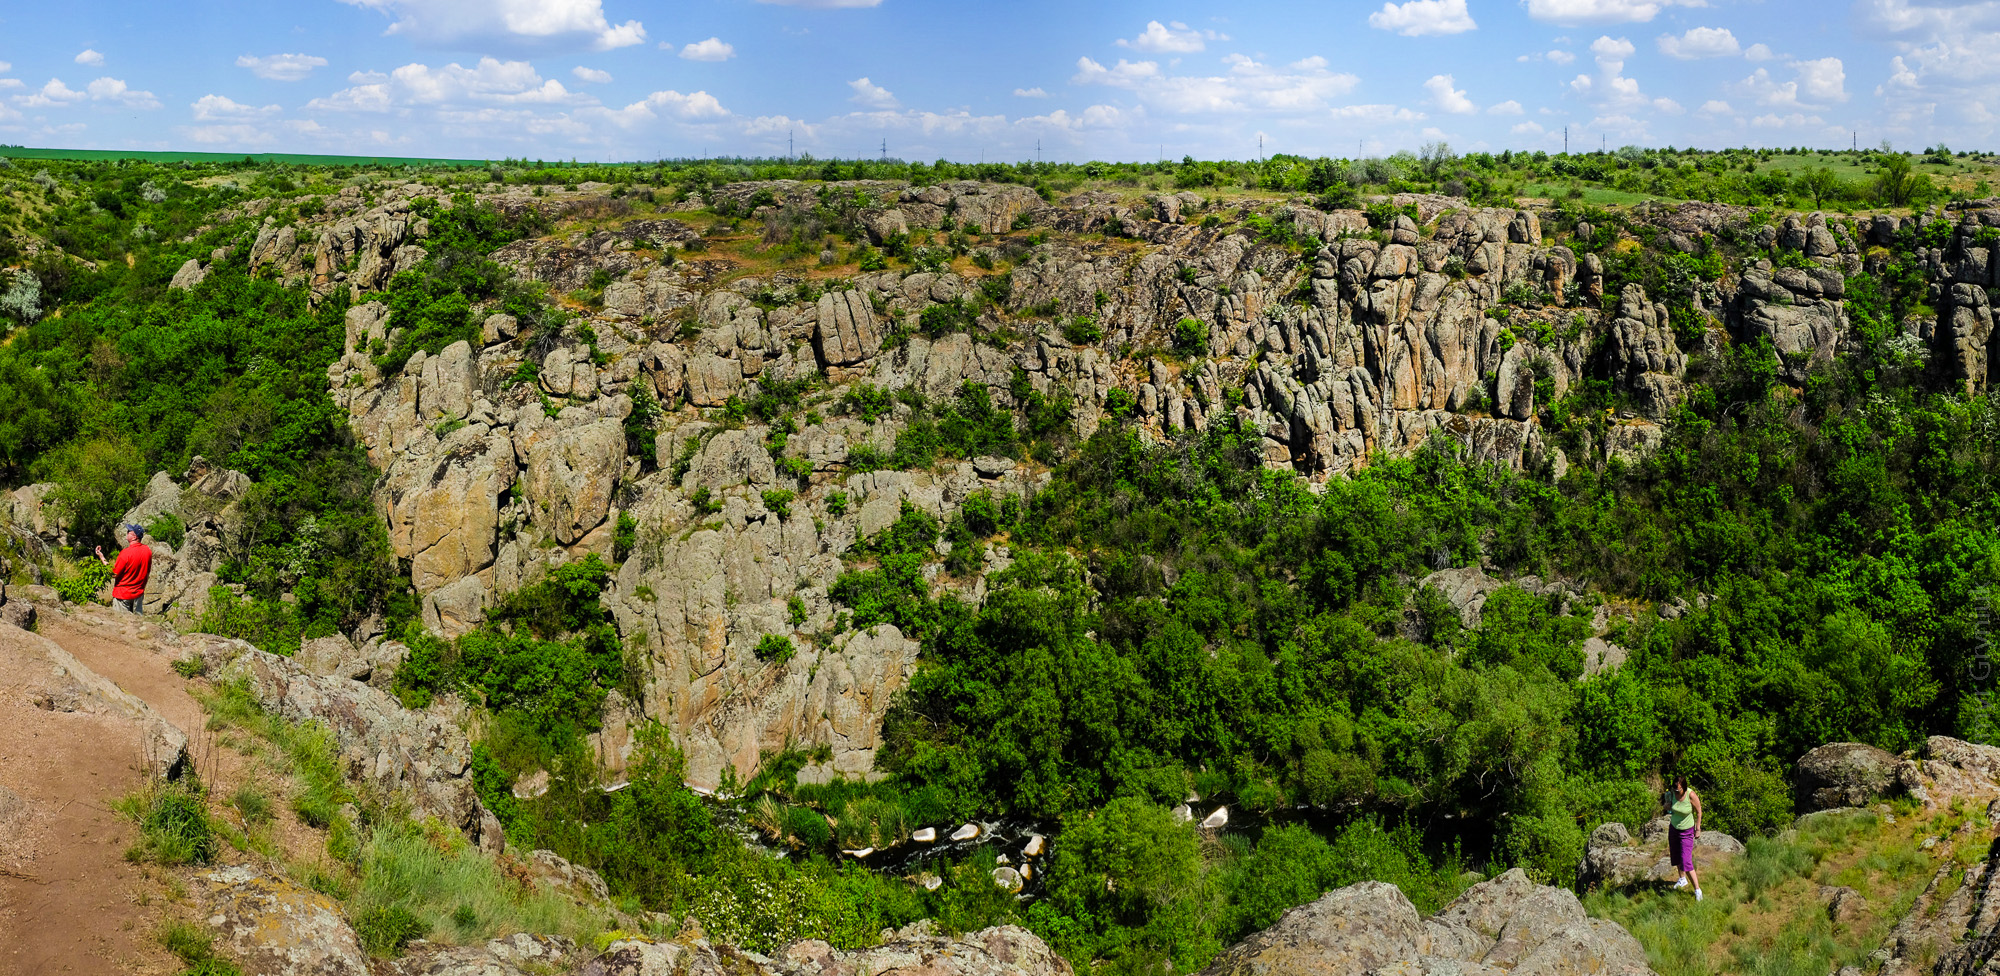 Актовский каньон херсонська область Україна